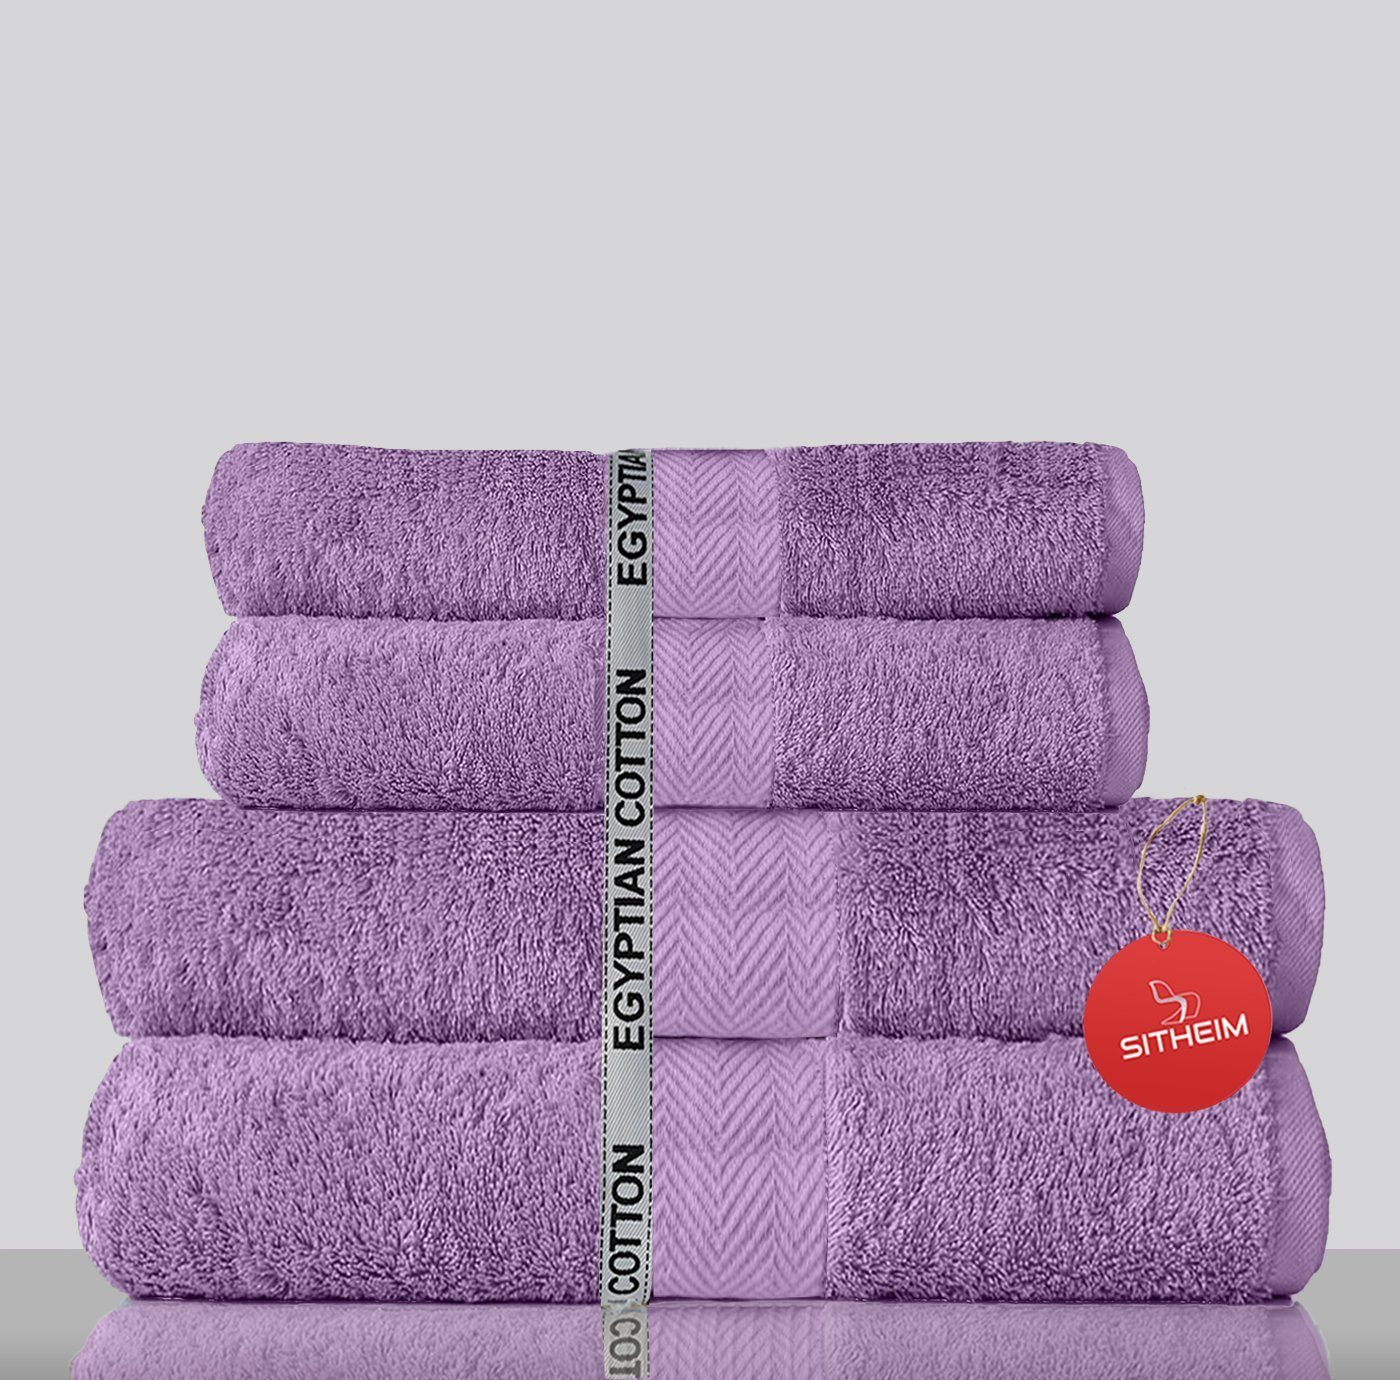 Sitheim-Europe Handtuch Set KING TUT Handtücher 100% ägyptischer Baumwolle 4-teiliges Handtuchset, ägyptischer Baumwolle, (Spar-Set, 4-tlg), Edel, kuschelweich, langlebig, 100% premium ägyptische Baumwolle Lavendel